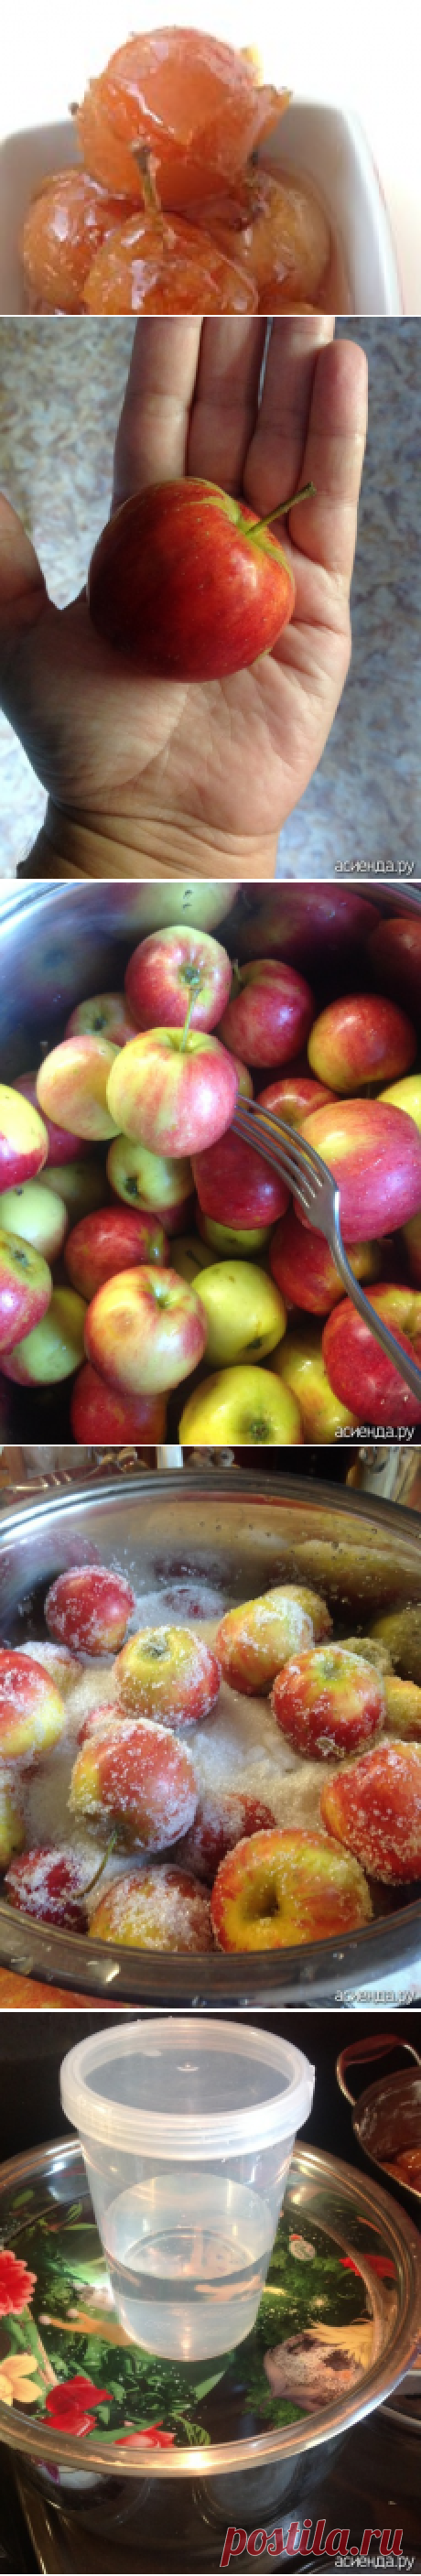 Сказание о наливных яблочках!: Группа Собираем урожай: хвастики, рецепты, заготовки